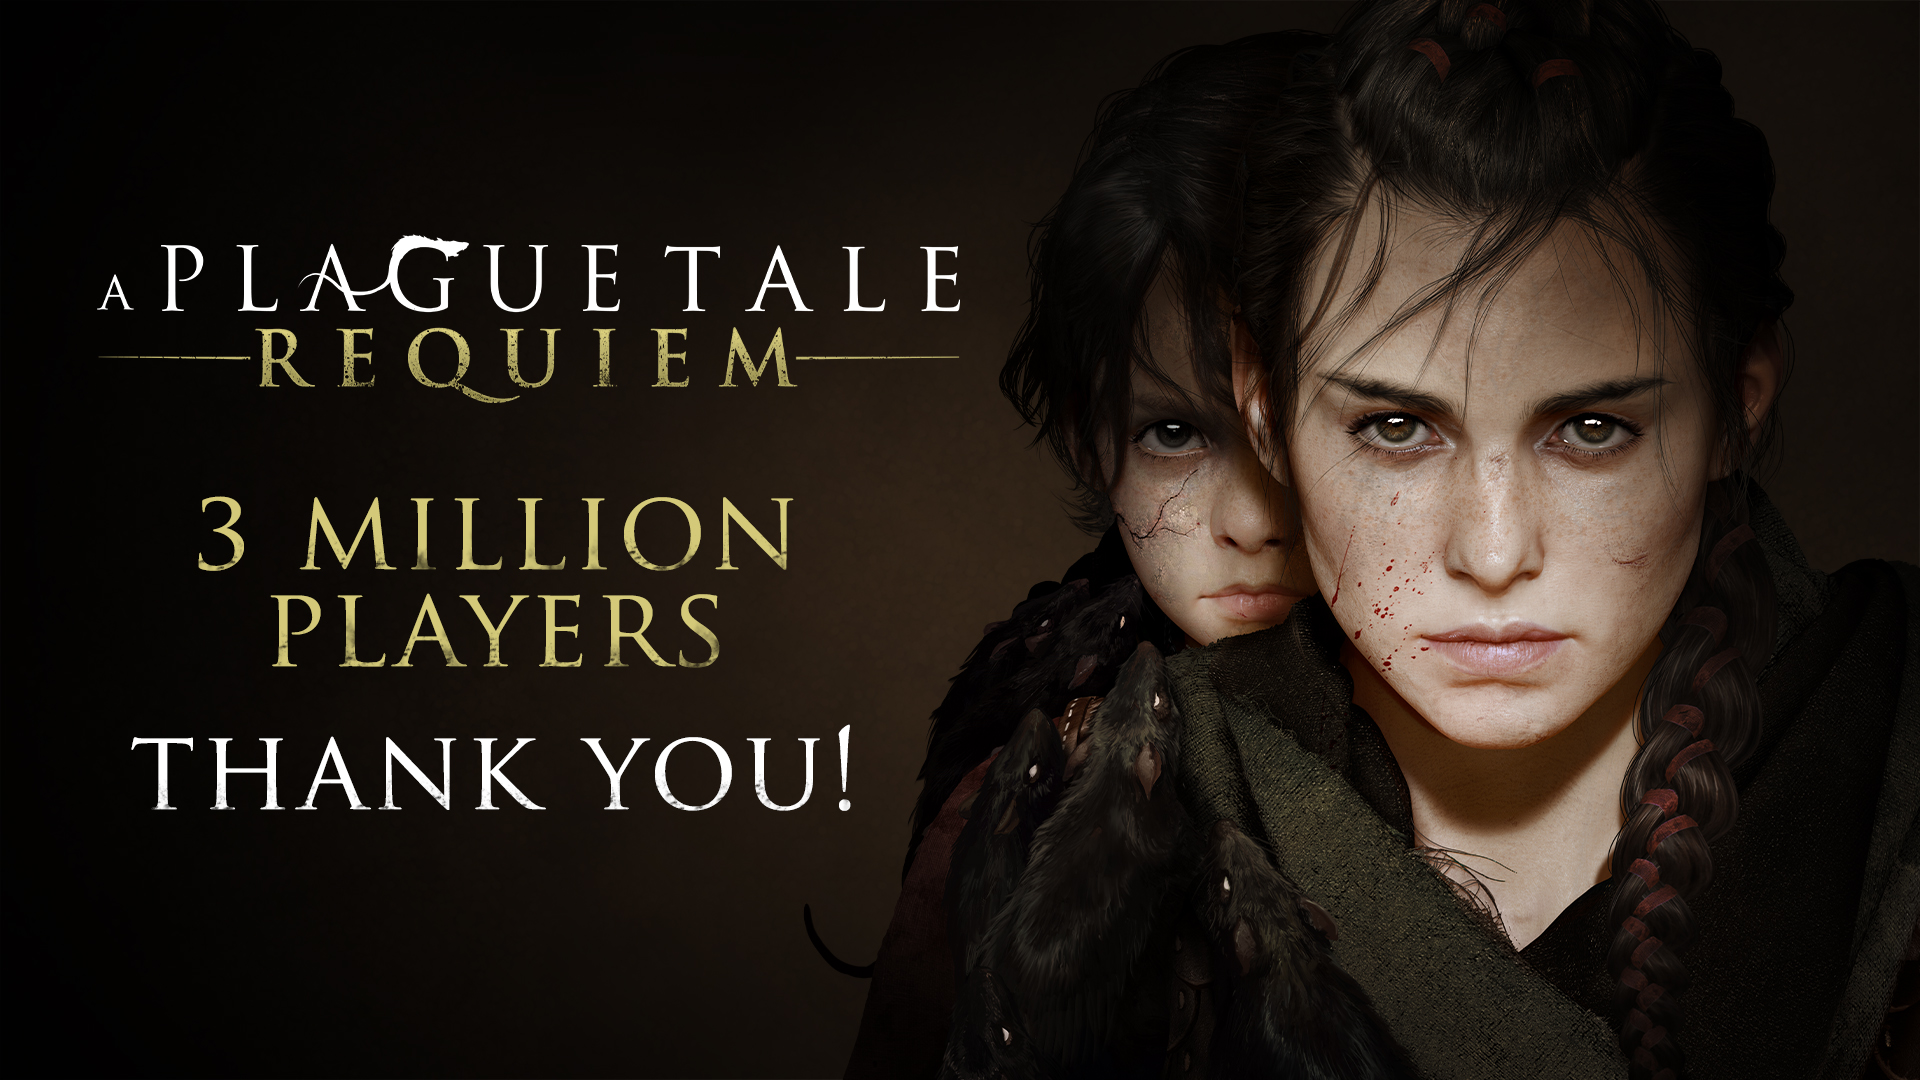 Студия Asobo работает над новой игрой с Focus Entertainment, у A Plague Tale: Requiem уже свыше 3 млн игроков: с сайта NEWXBOXONE.RU